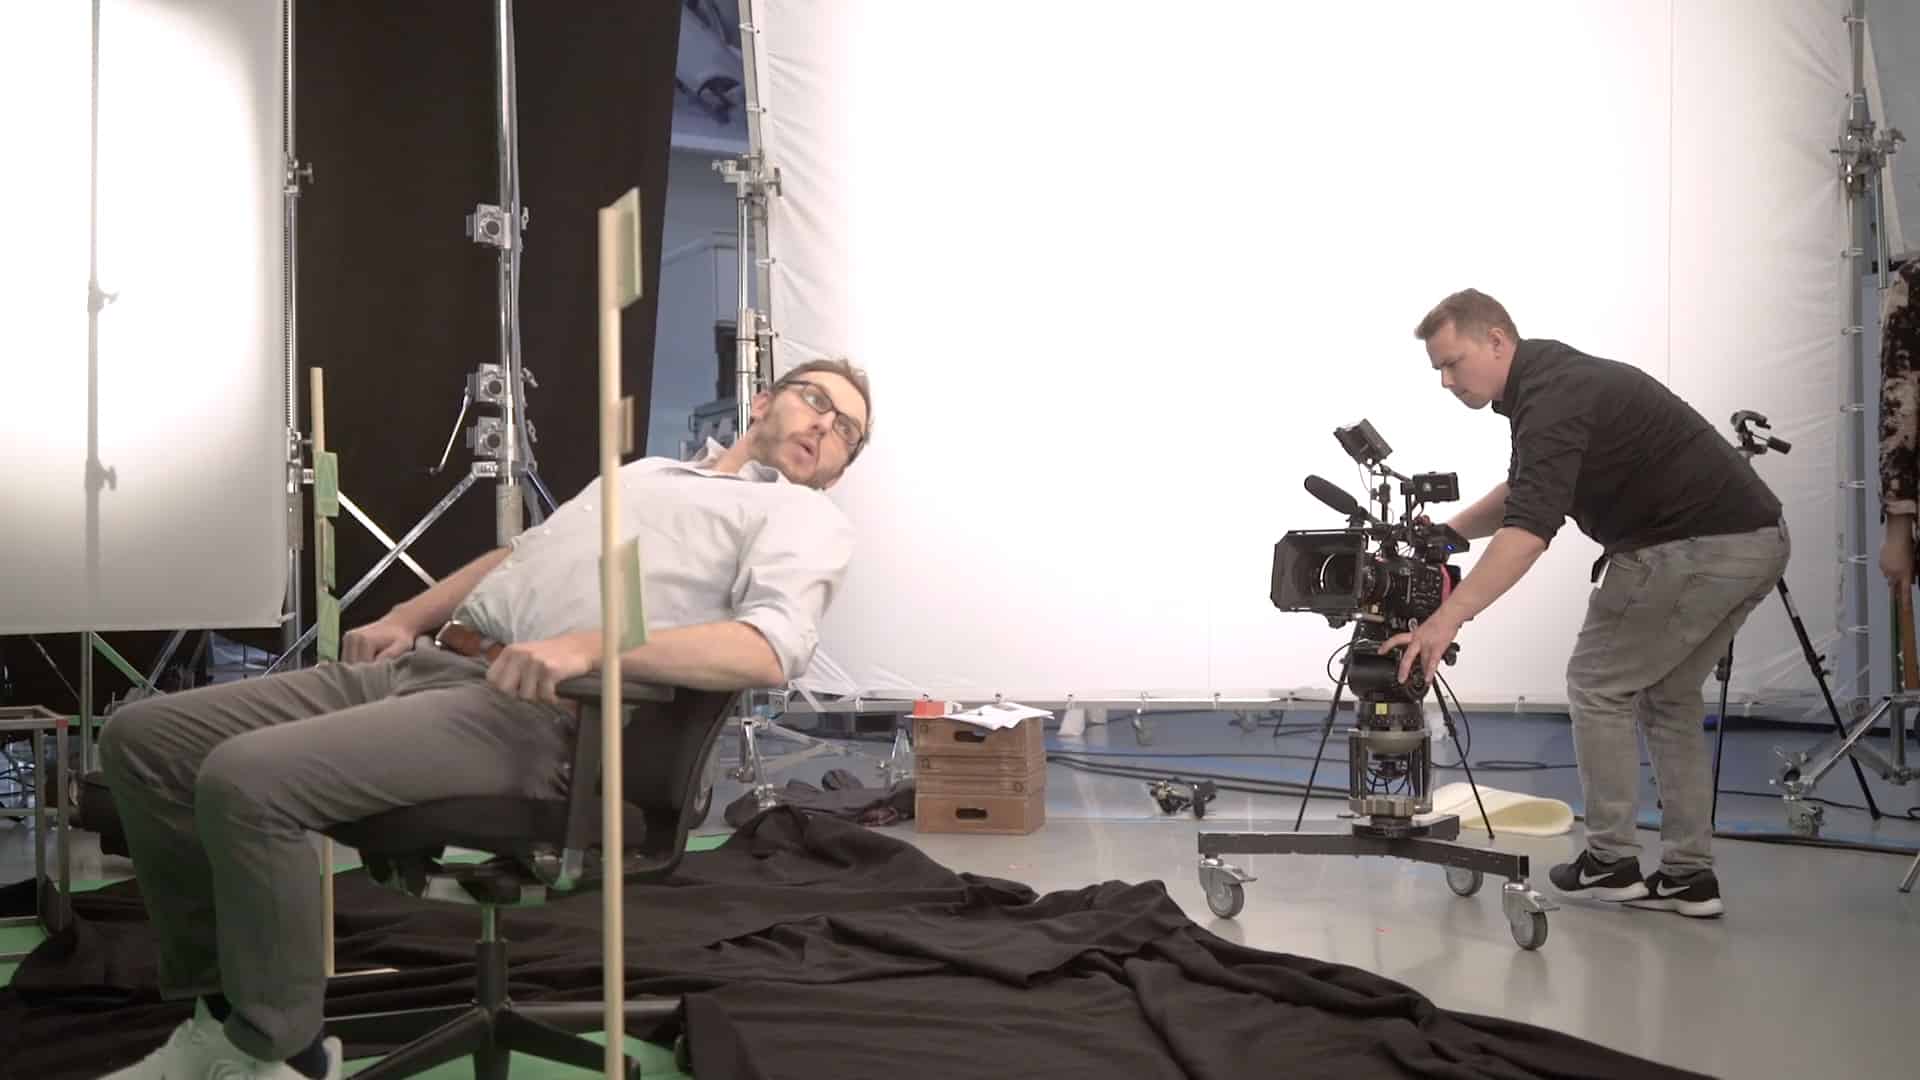 Darsteller und Kameramann von Hawkins Filmproduktion behind the scenes auf dem Dürr Filmset.